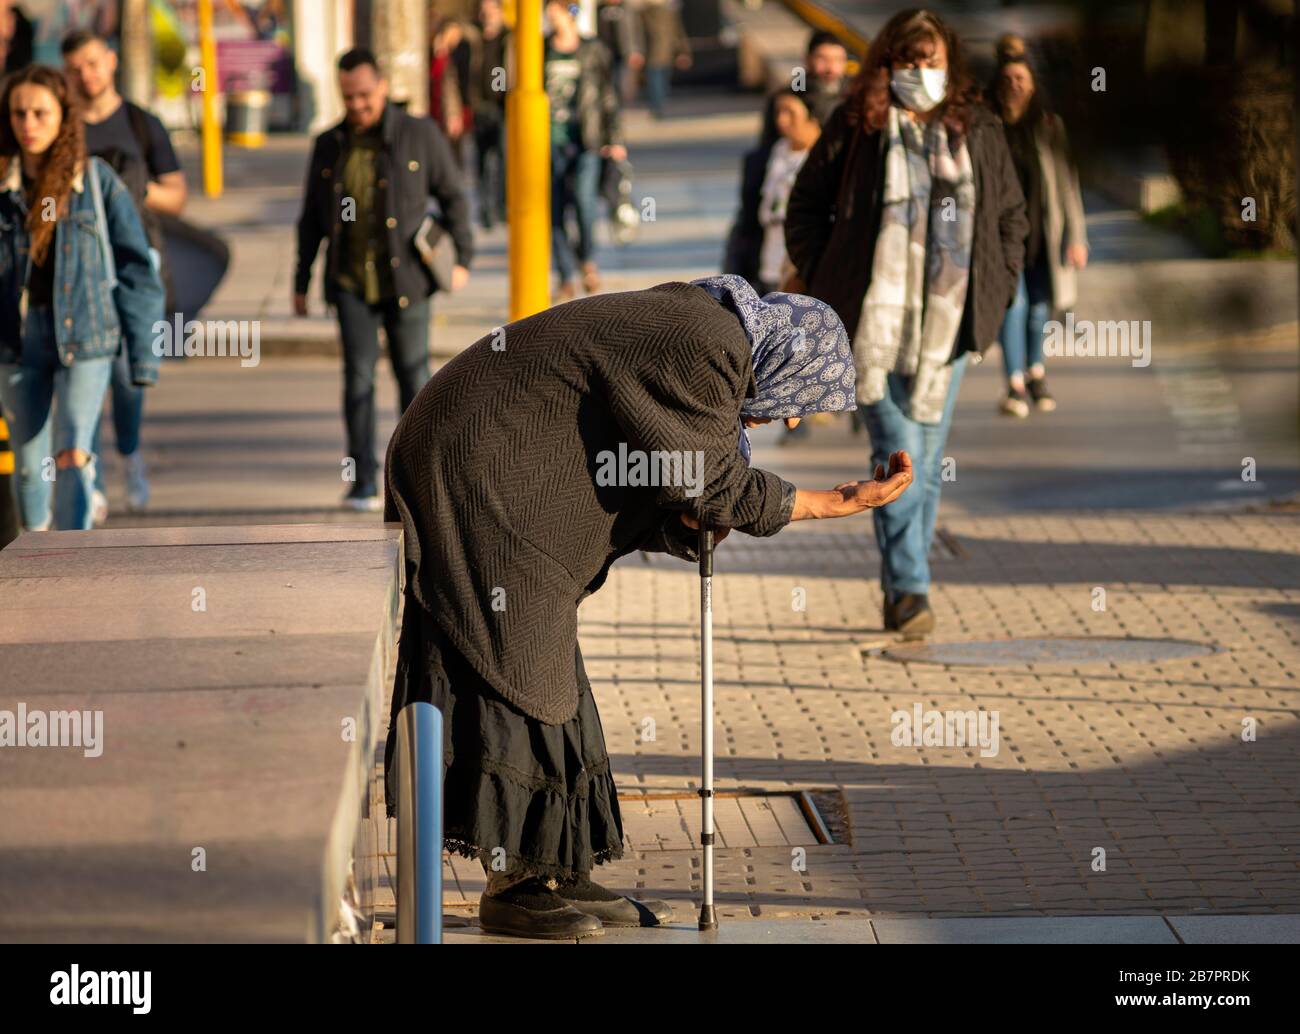 Alte Bettler-Seniorin in schwarzer Kleidung und mit einem Stock bettelt seit 2020 auf den Straßen in Sofia, Bulgarien, um Geld Stockfoto